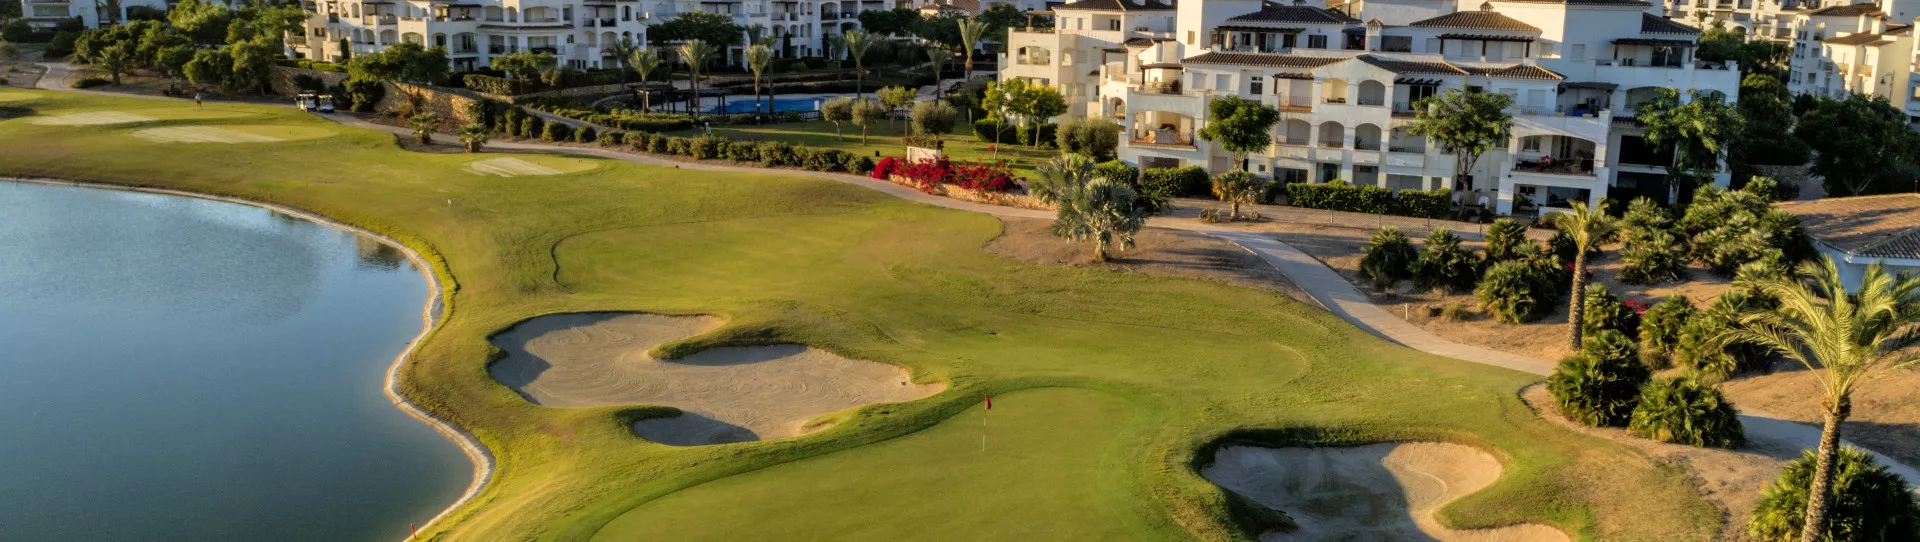 Spain golf courses - La Torre Golf Course - Photo 1